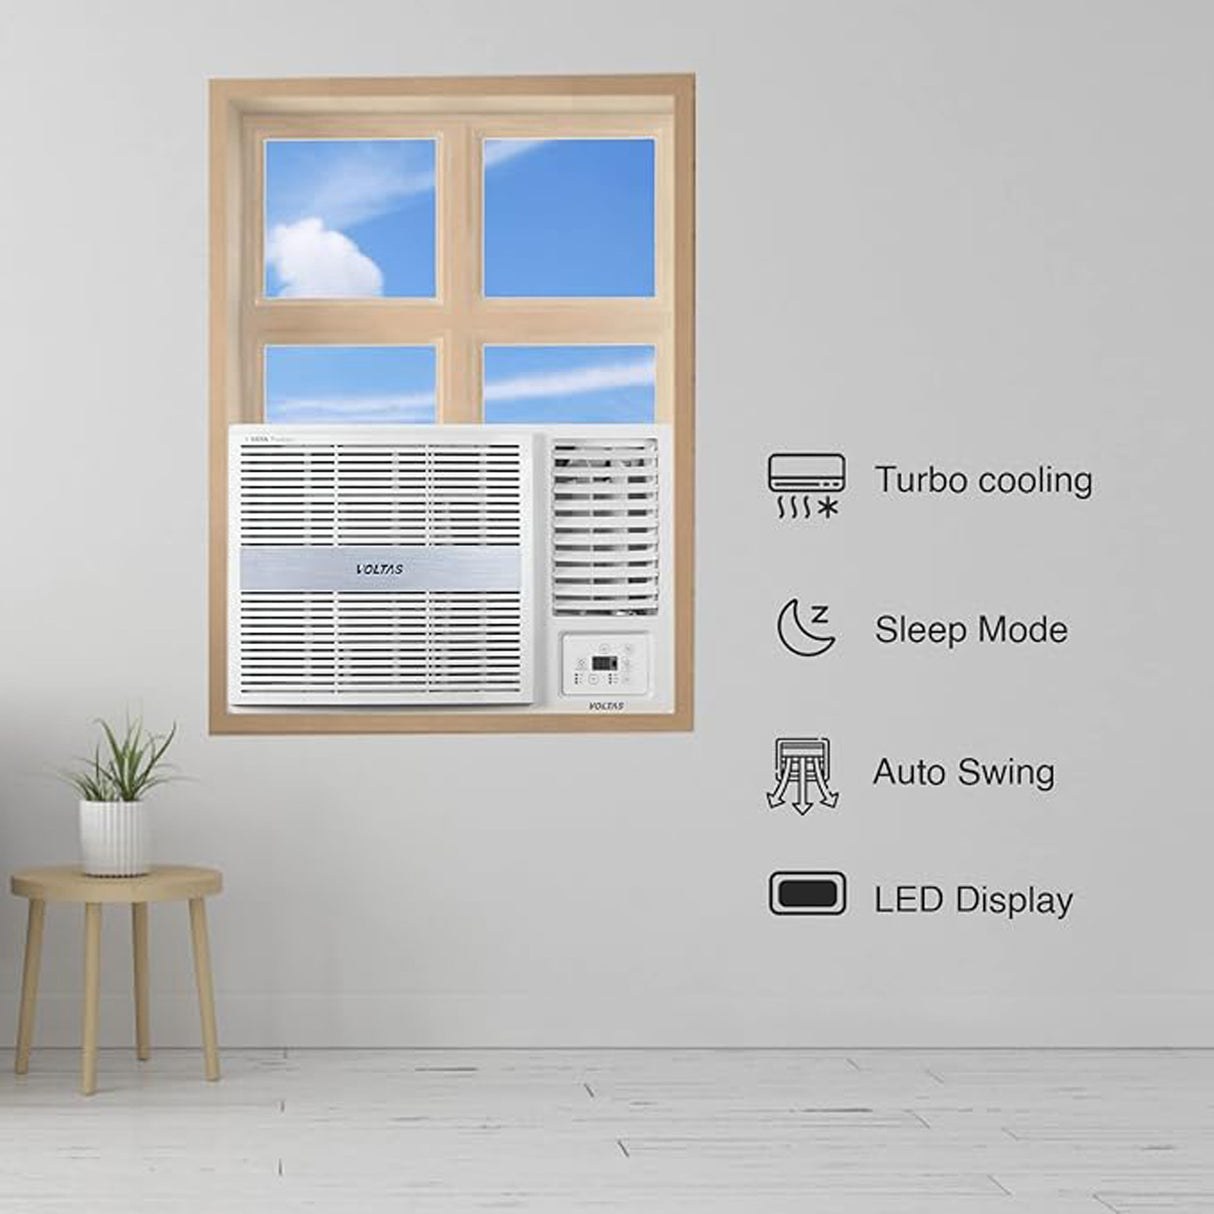 Best Air Conditioner: Voltas 1 Ton 3-Star Window AC in White